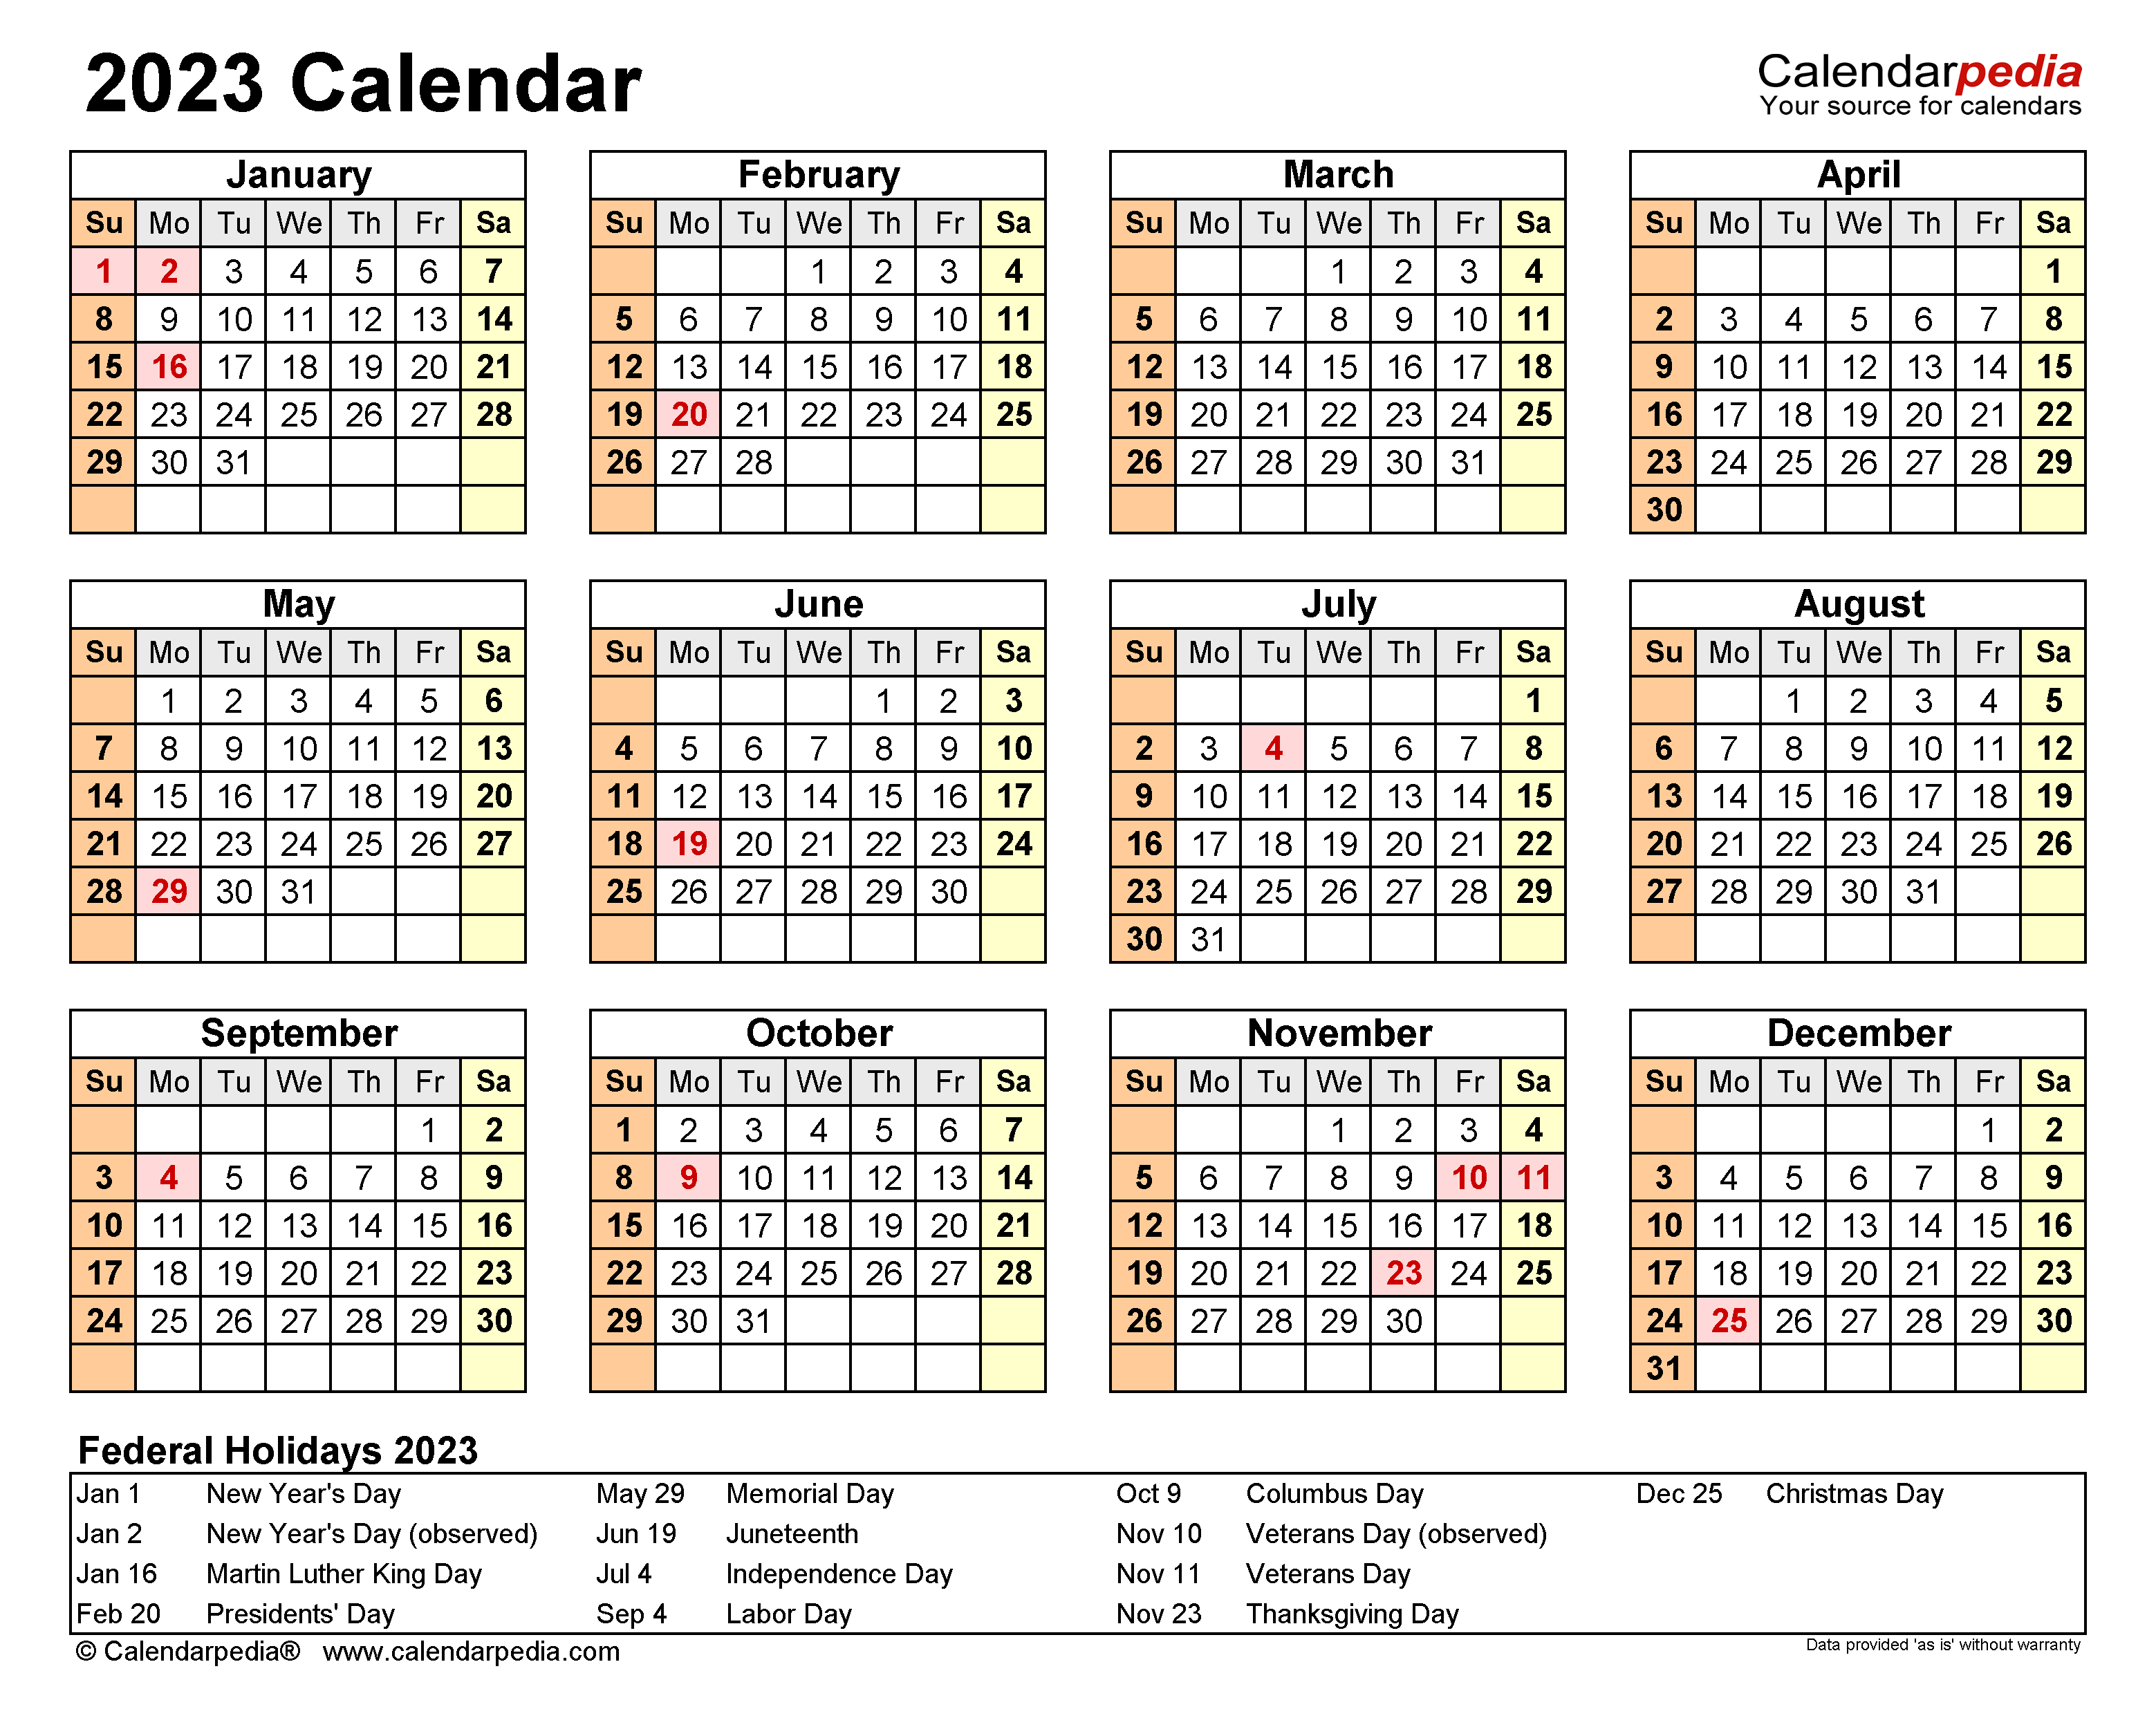 Rice Academic Calendar 20222023